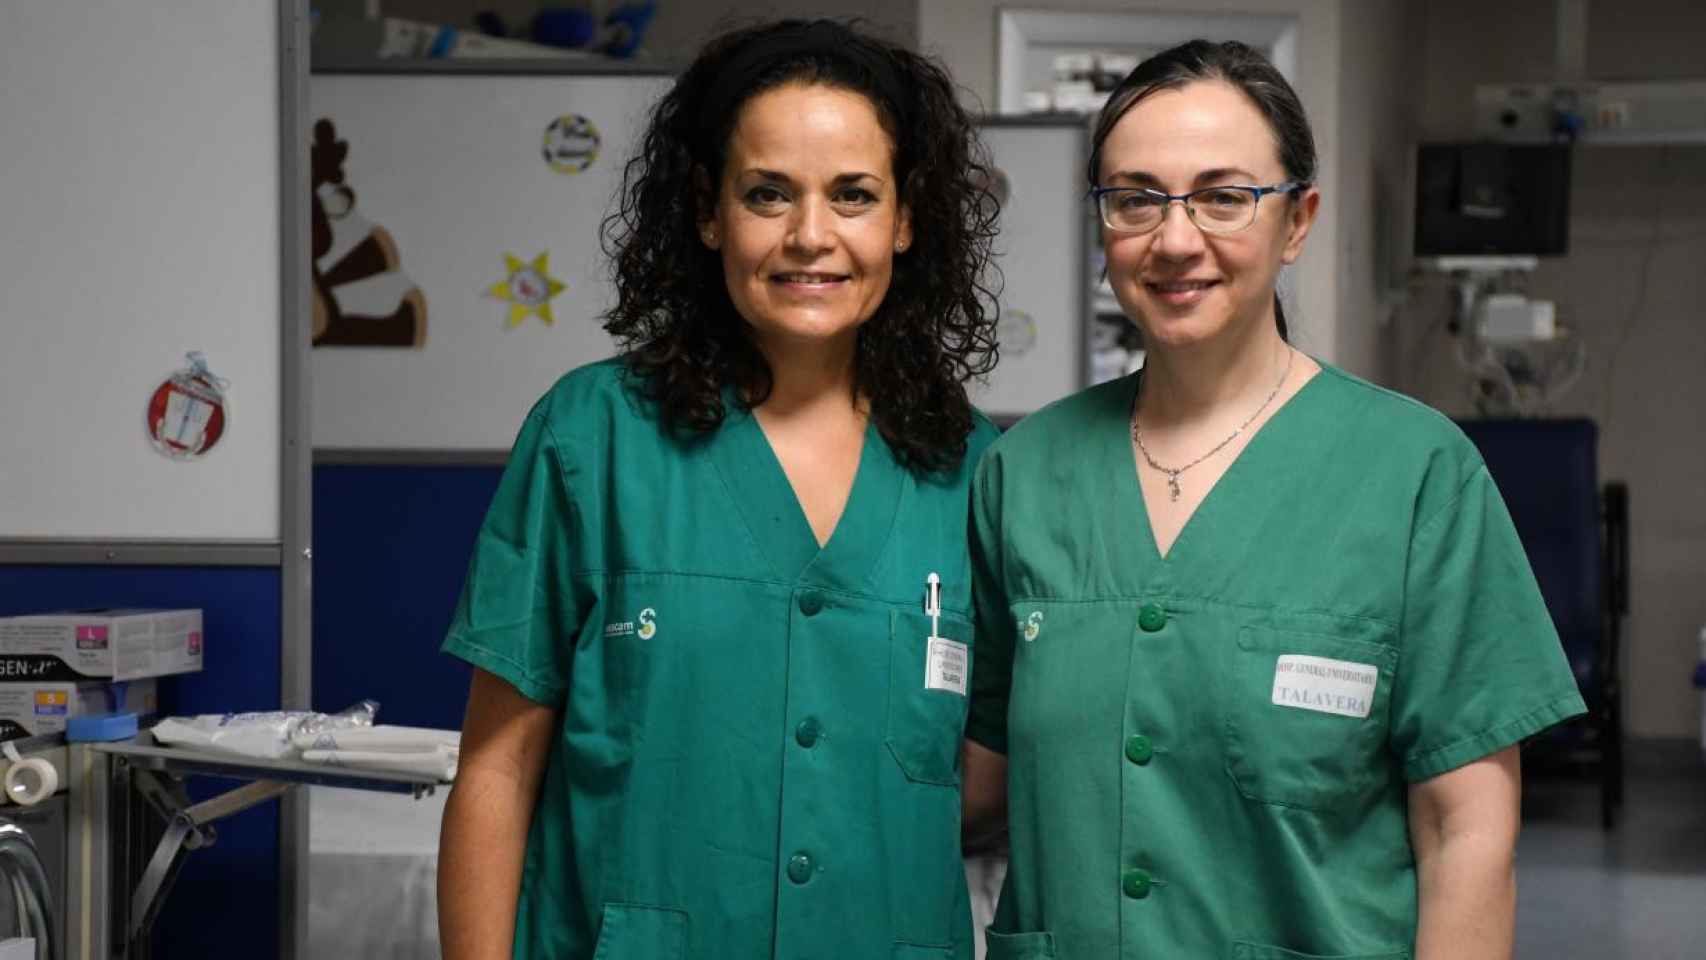 Las coordinadoras médico y de enfermería de trasplantes del hospital talaverano, Ruth Corpas y Gema Martín Corrochano